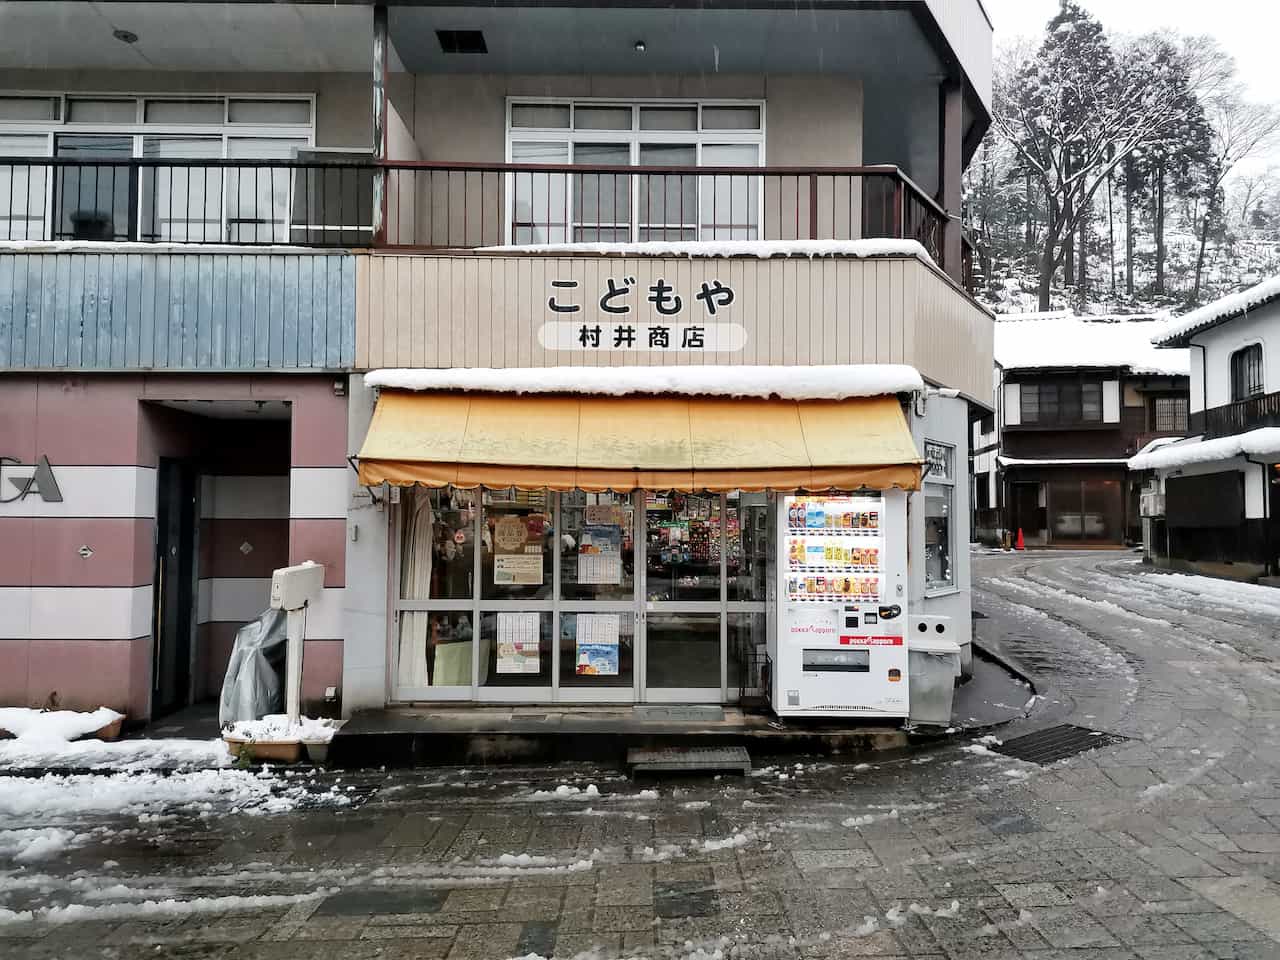 いながきの駄菓子屋探訪84富山県富山市こどもや村井商店3